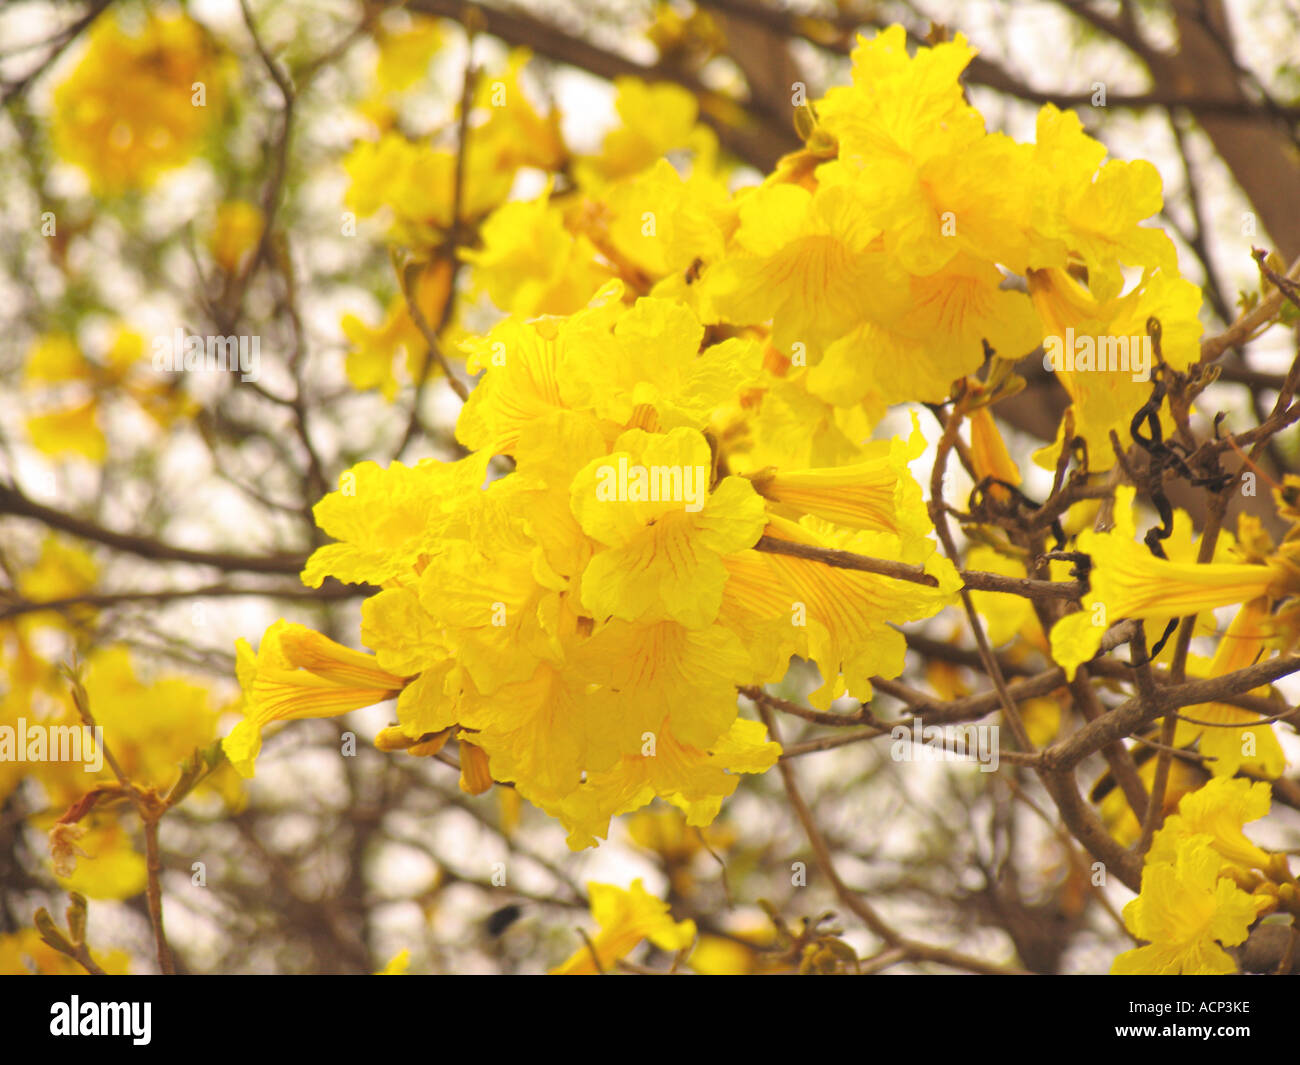 Yellow Trumpet flowers, LA Arboretum Stock Photo